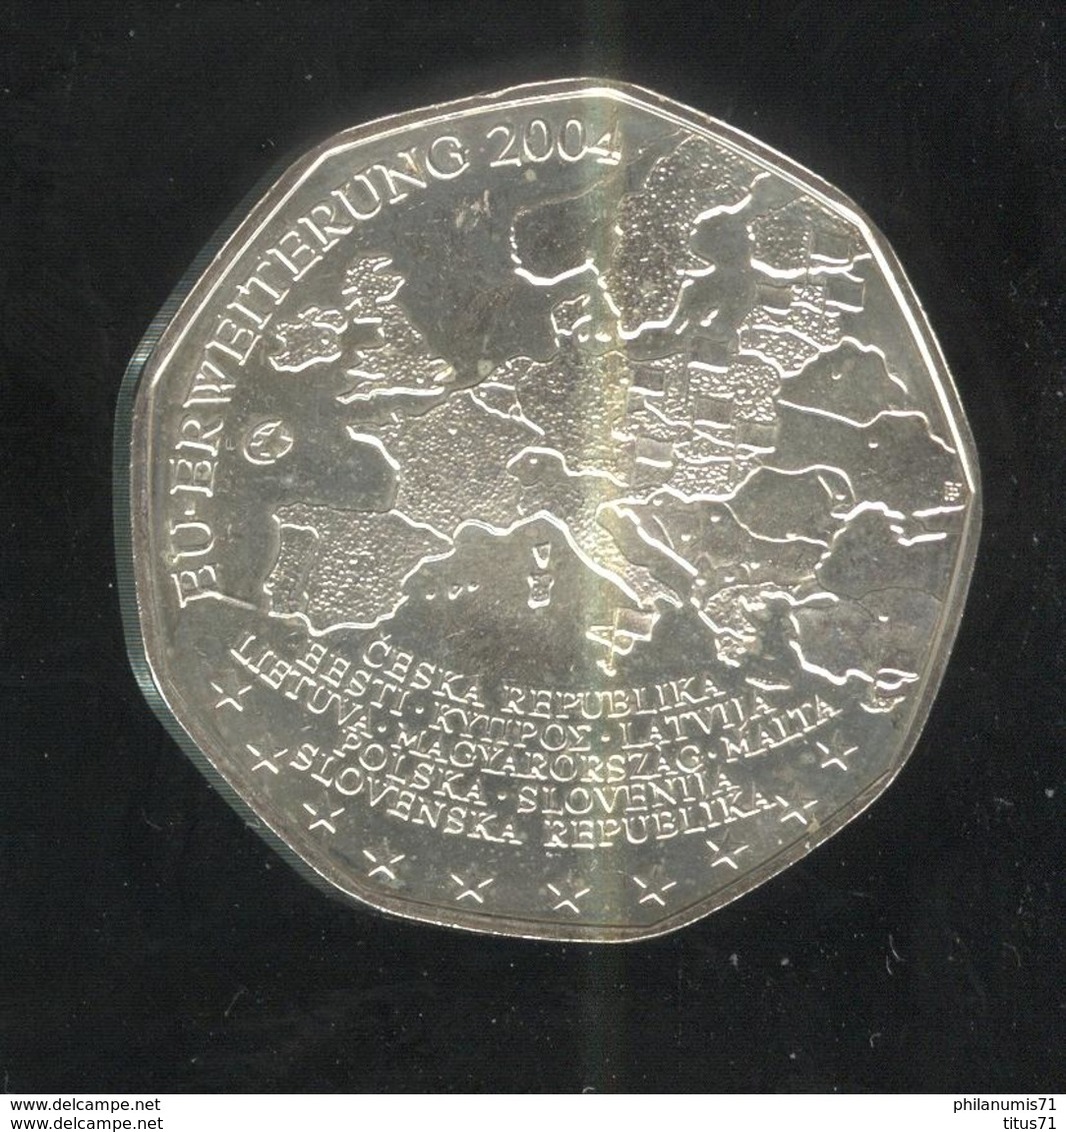 5 Euros Autriche Argent 2004 - Élargissement De L'Union Européenne De 2004 - SUP - Austria